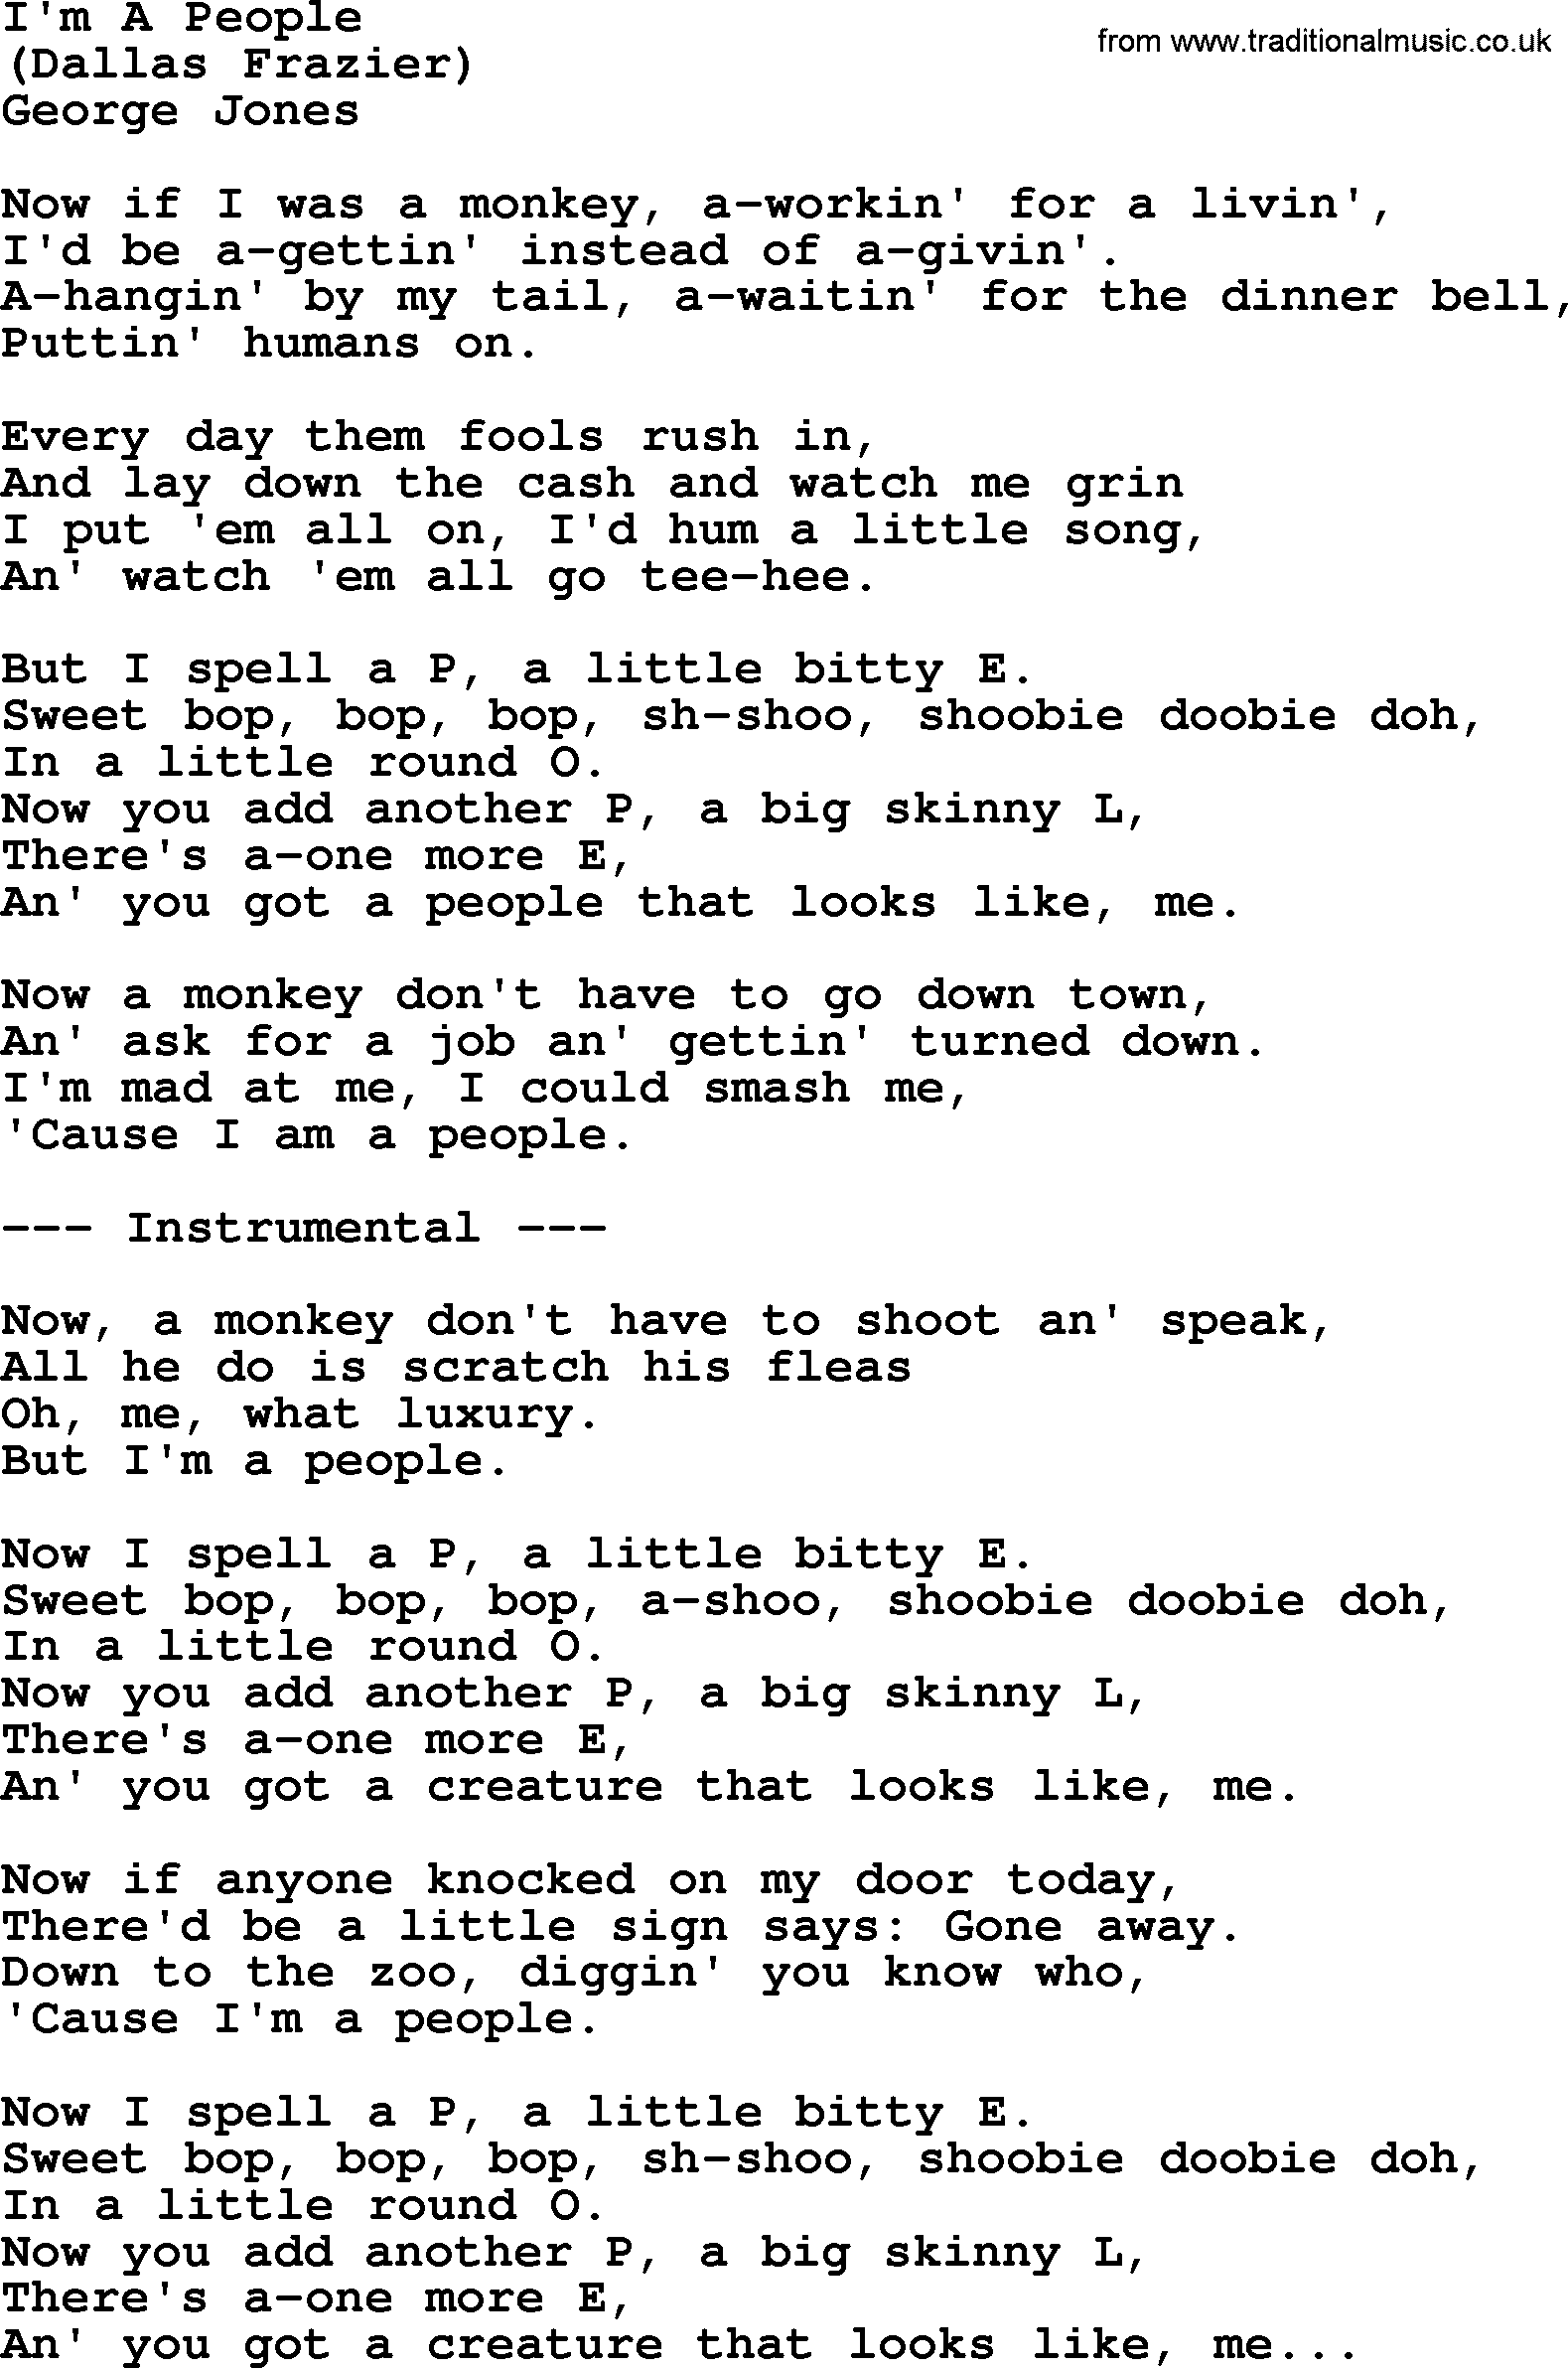 George Jones song: I'm A People, lyrics